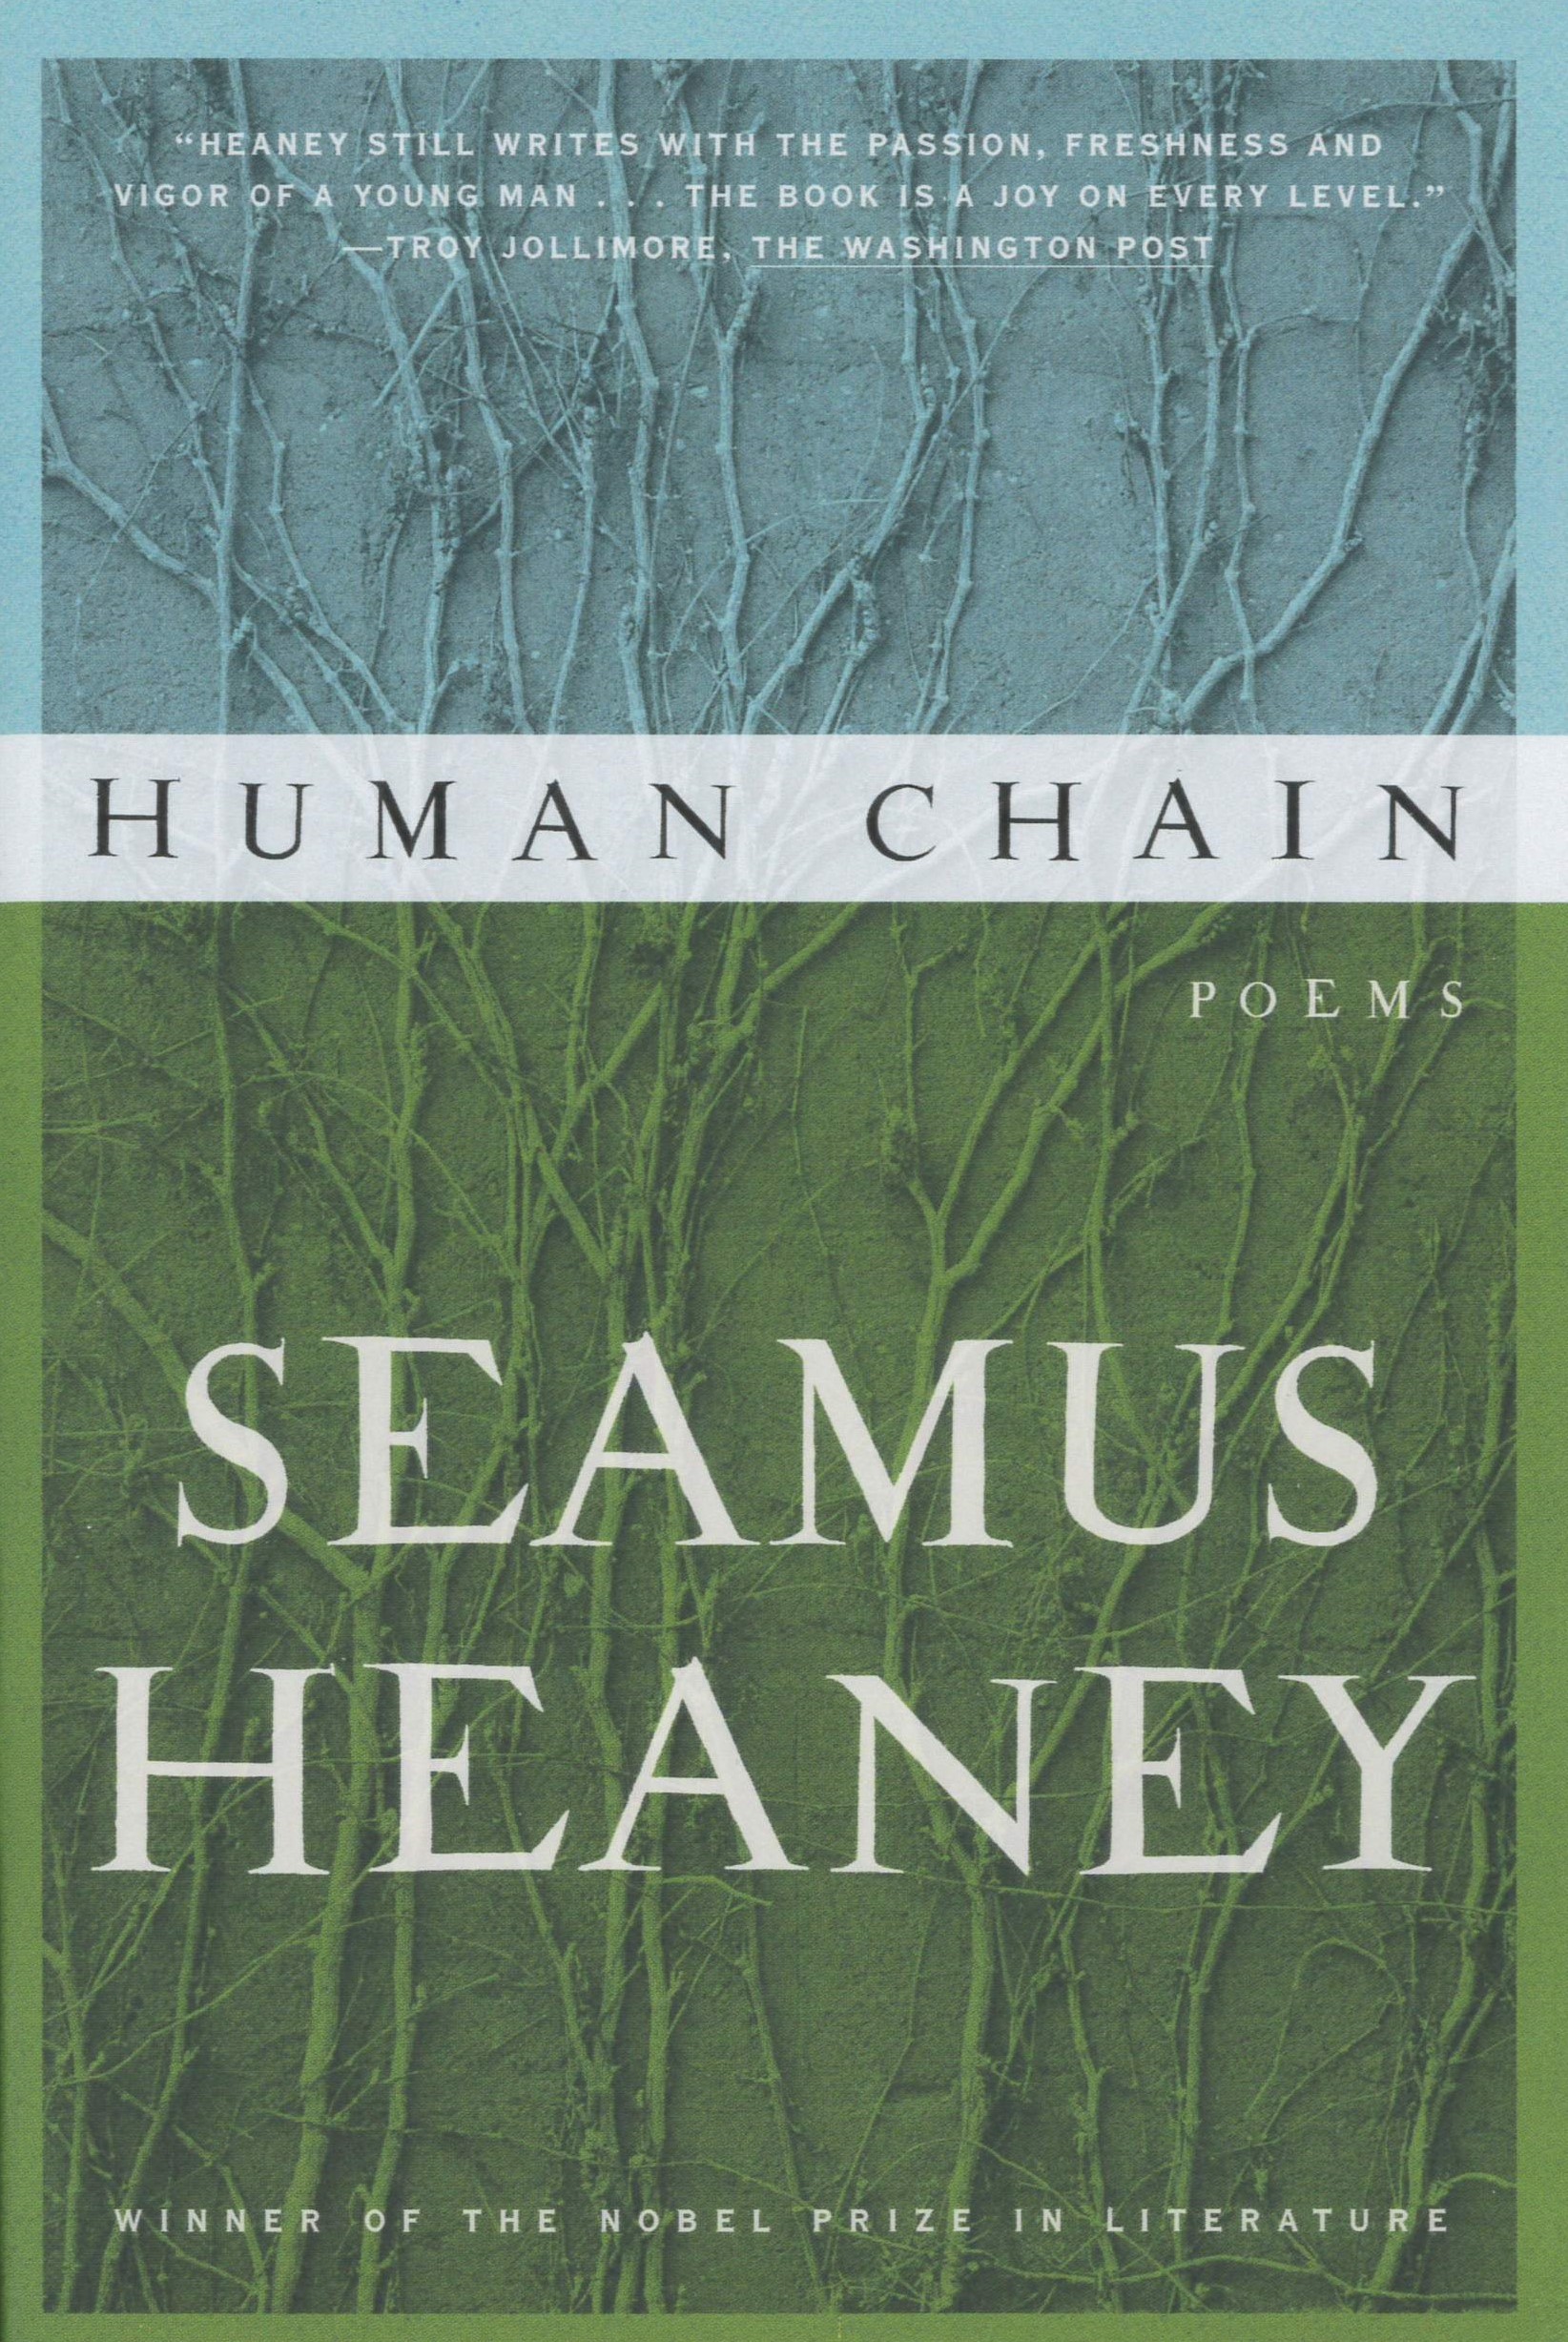 Human chain /